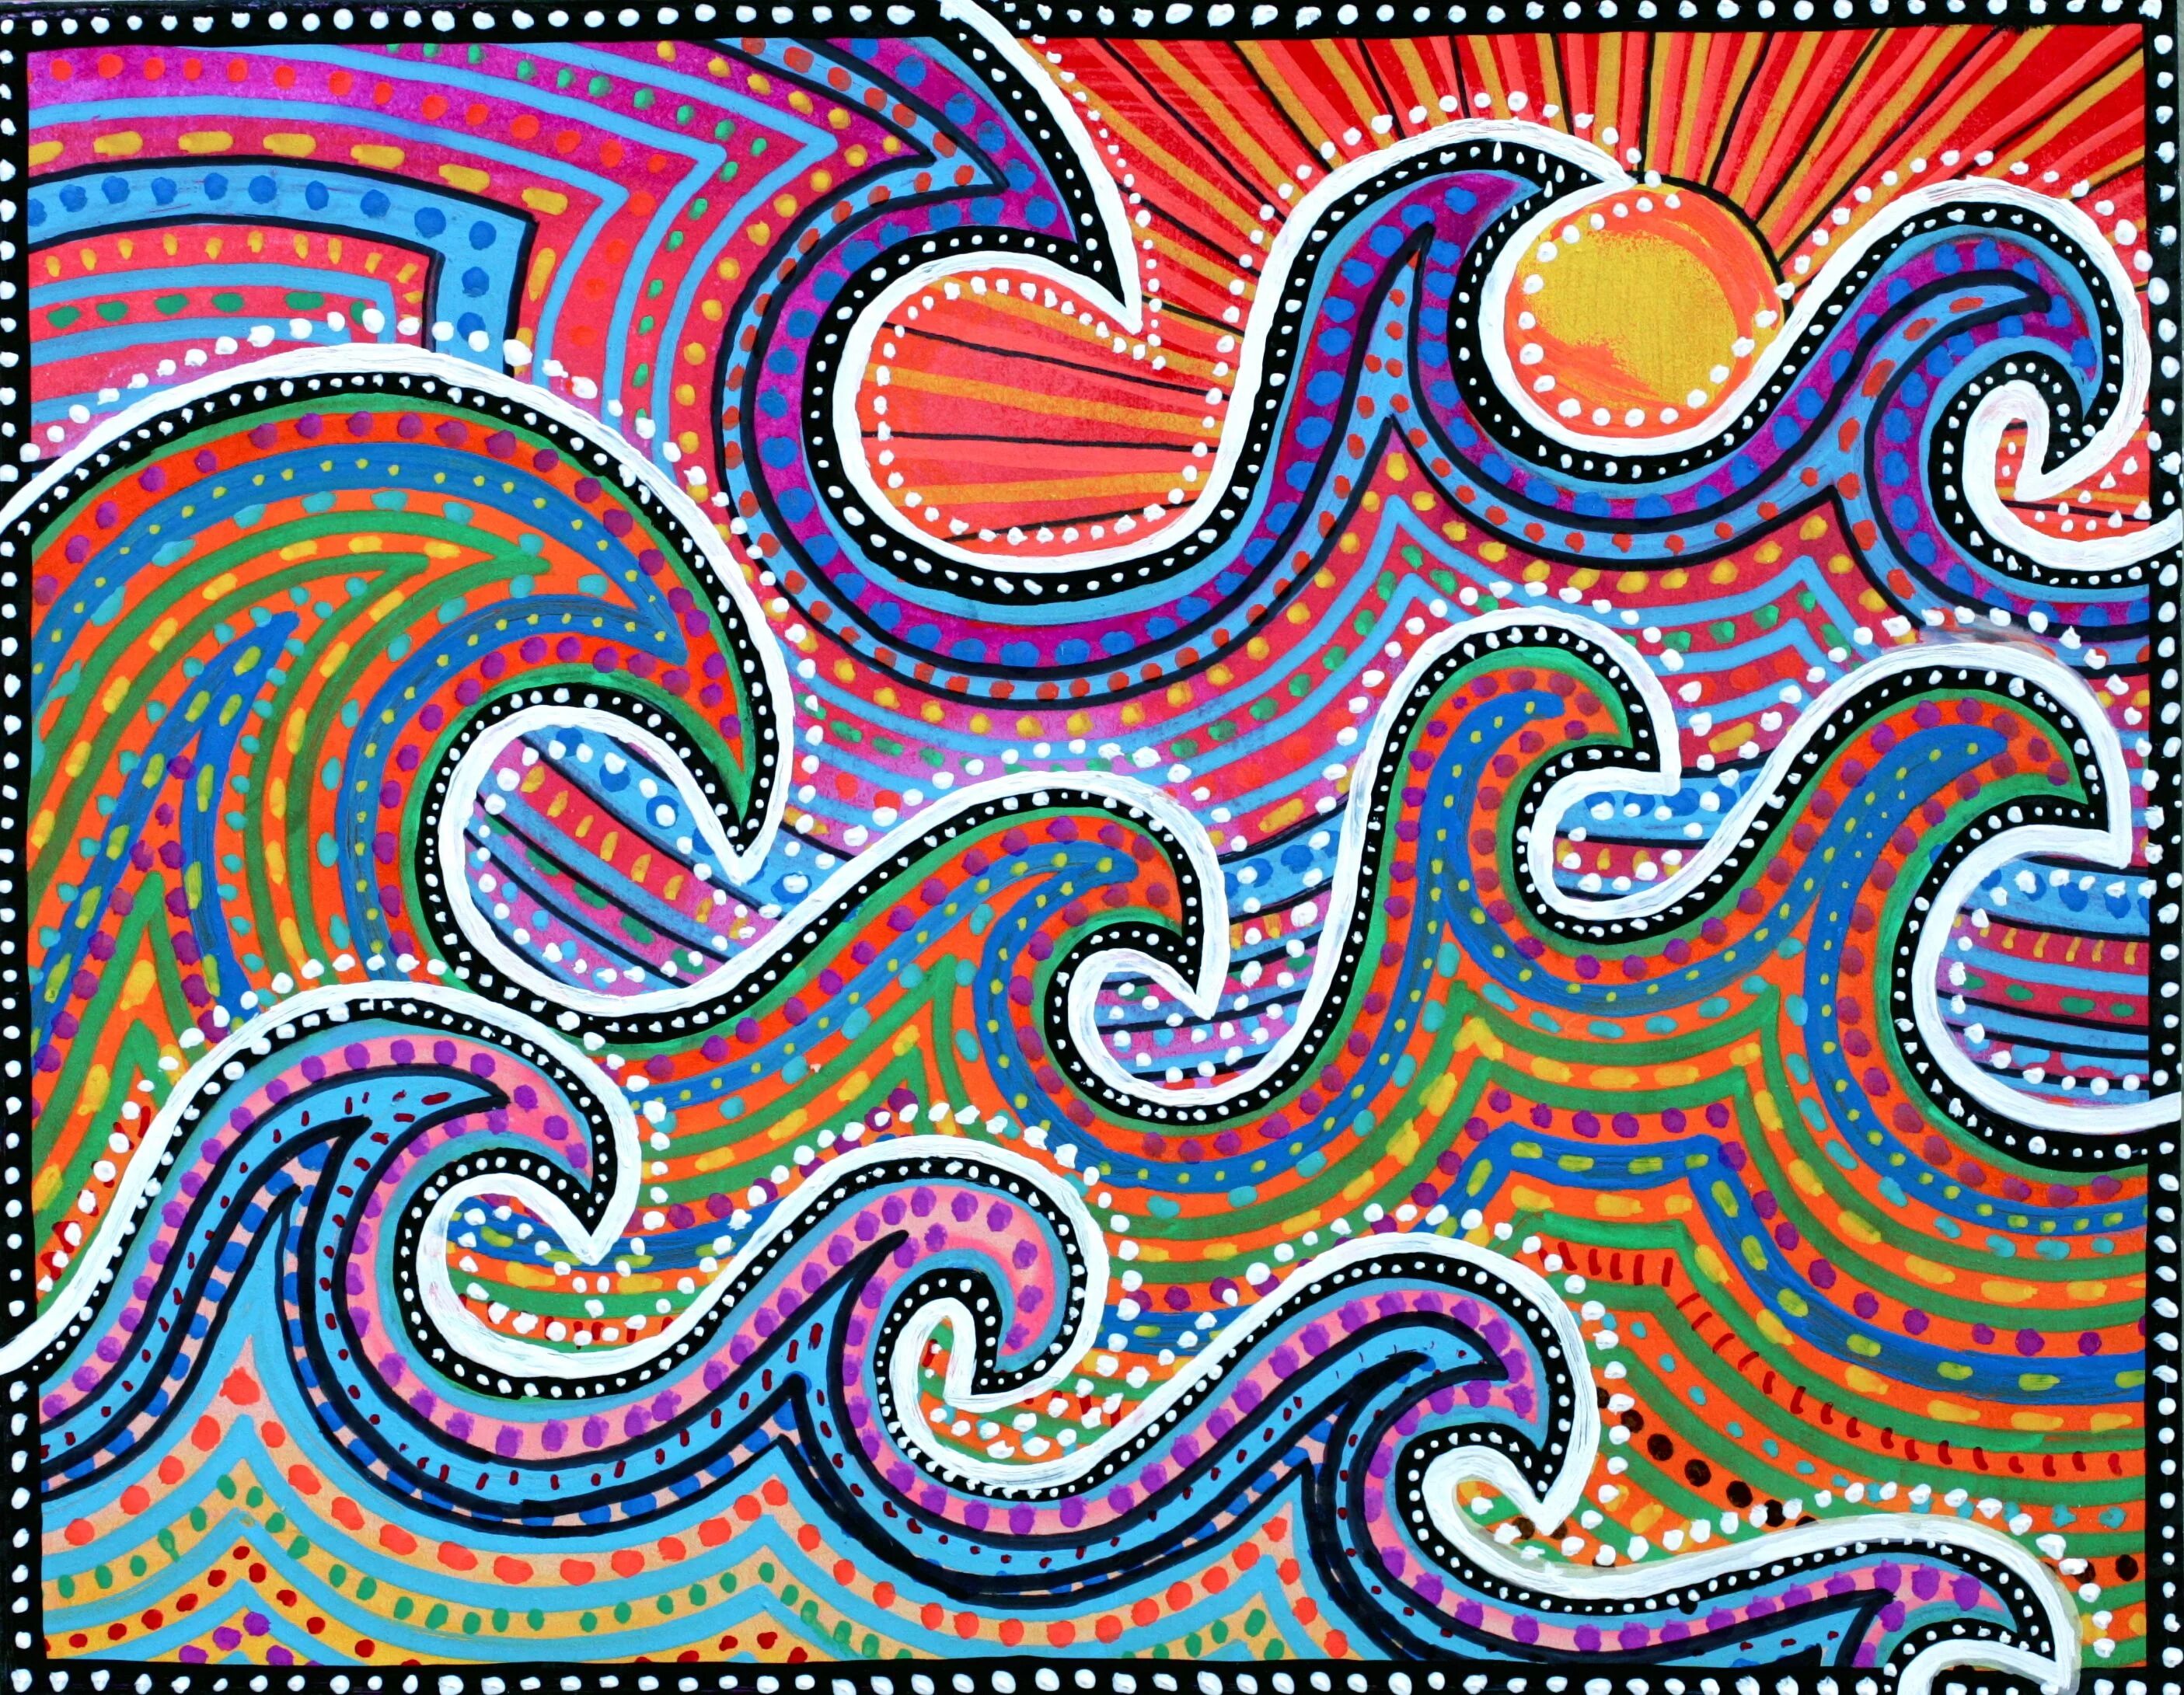 Ethnic wave. Australian aborigines узоры. Точечная живопись аборигенов Австралии. Точечная живопись аборигенов Австралии страус. Пуантель австралийских аборигенов.